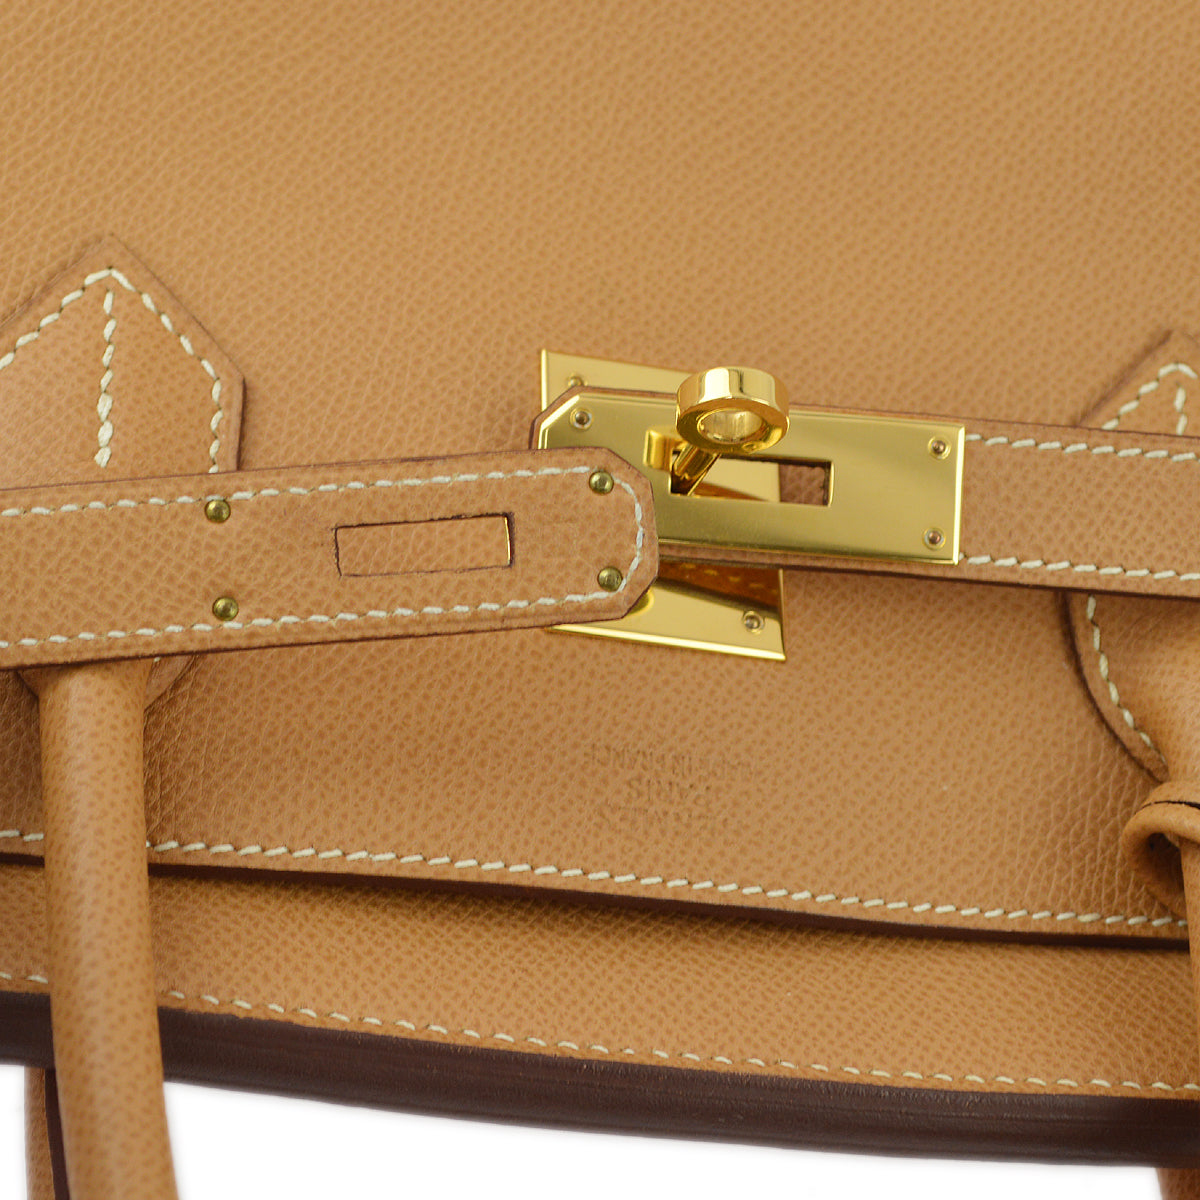 Hermes Natural Epsom Birkin 40 Handbag